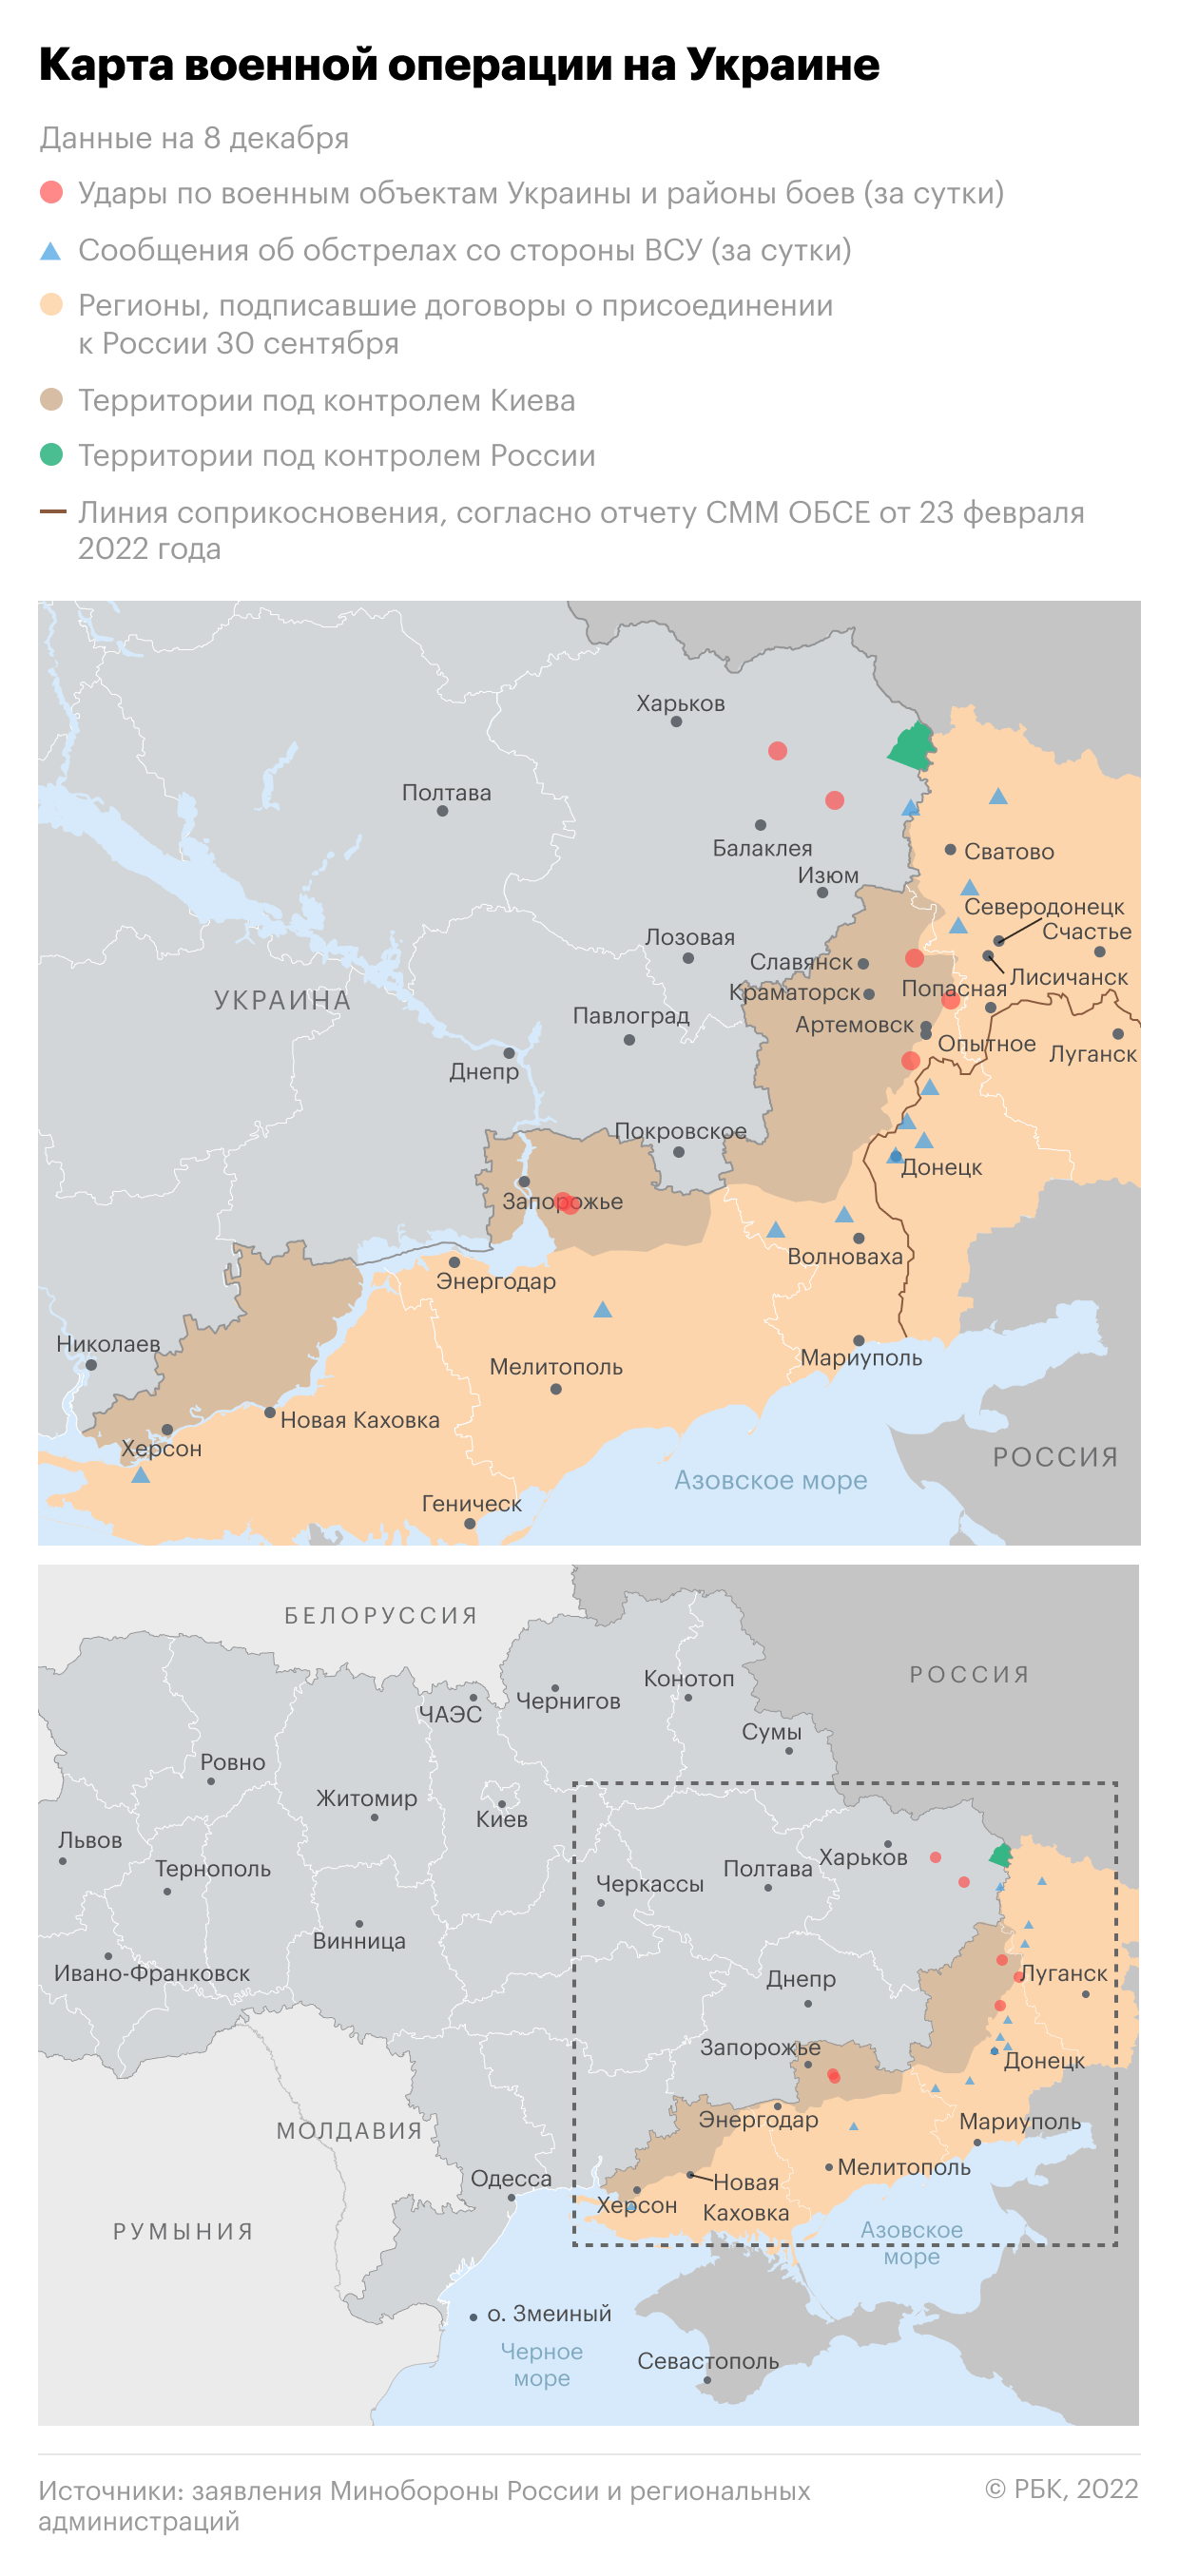 Кириенко заявил, что жители Донбасса отстояли право быть частью России